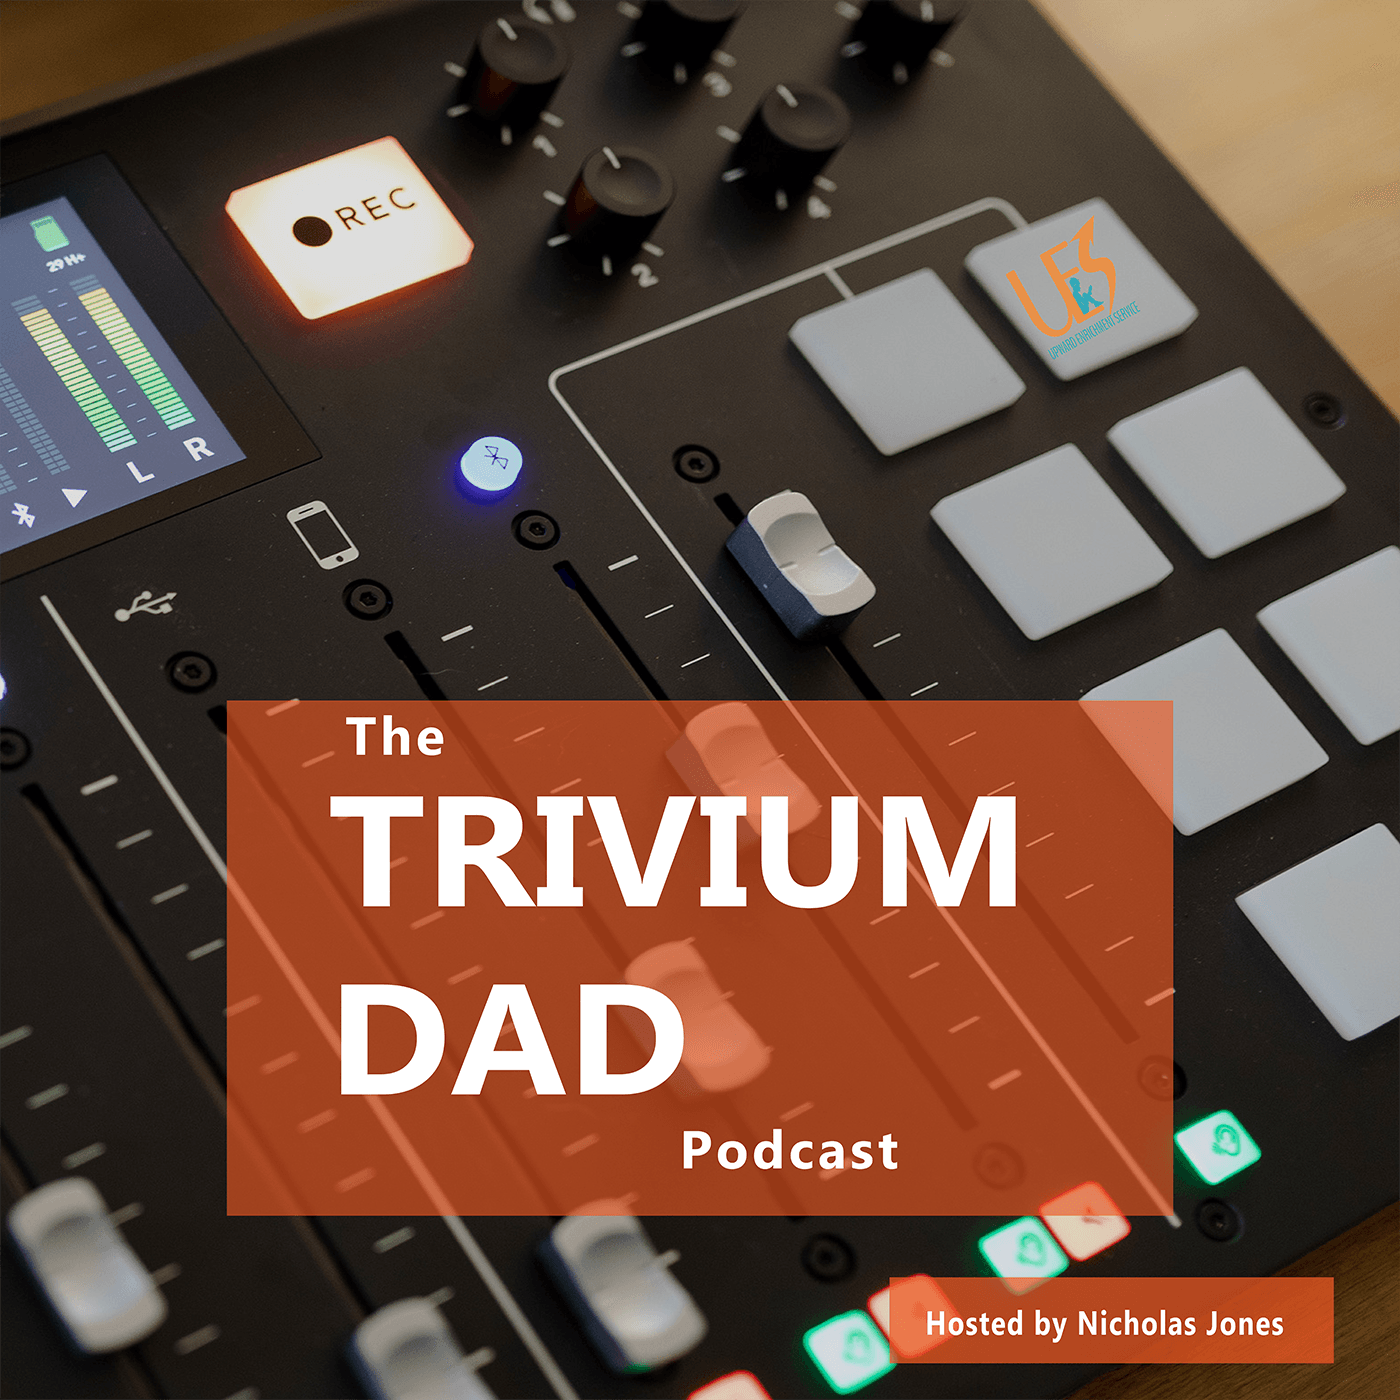 Trivium Dad Podcast